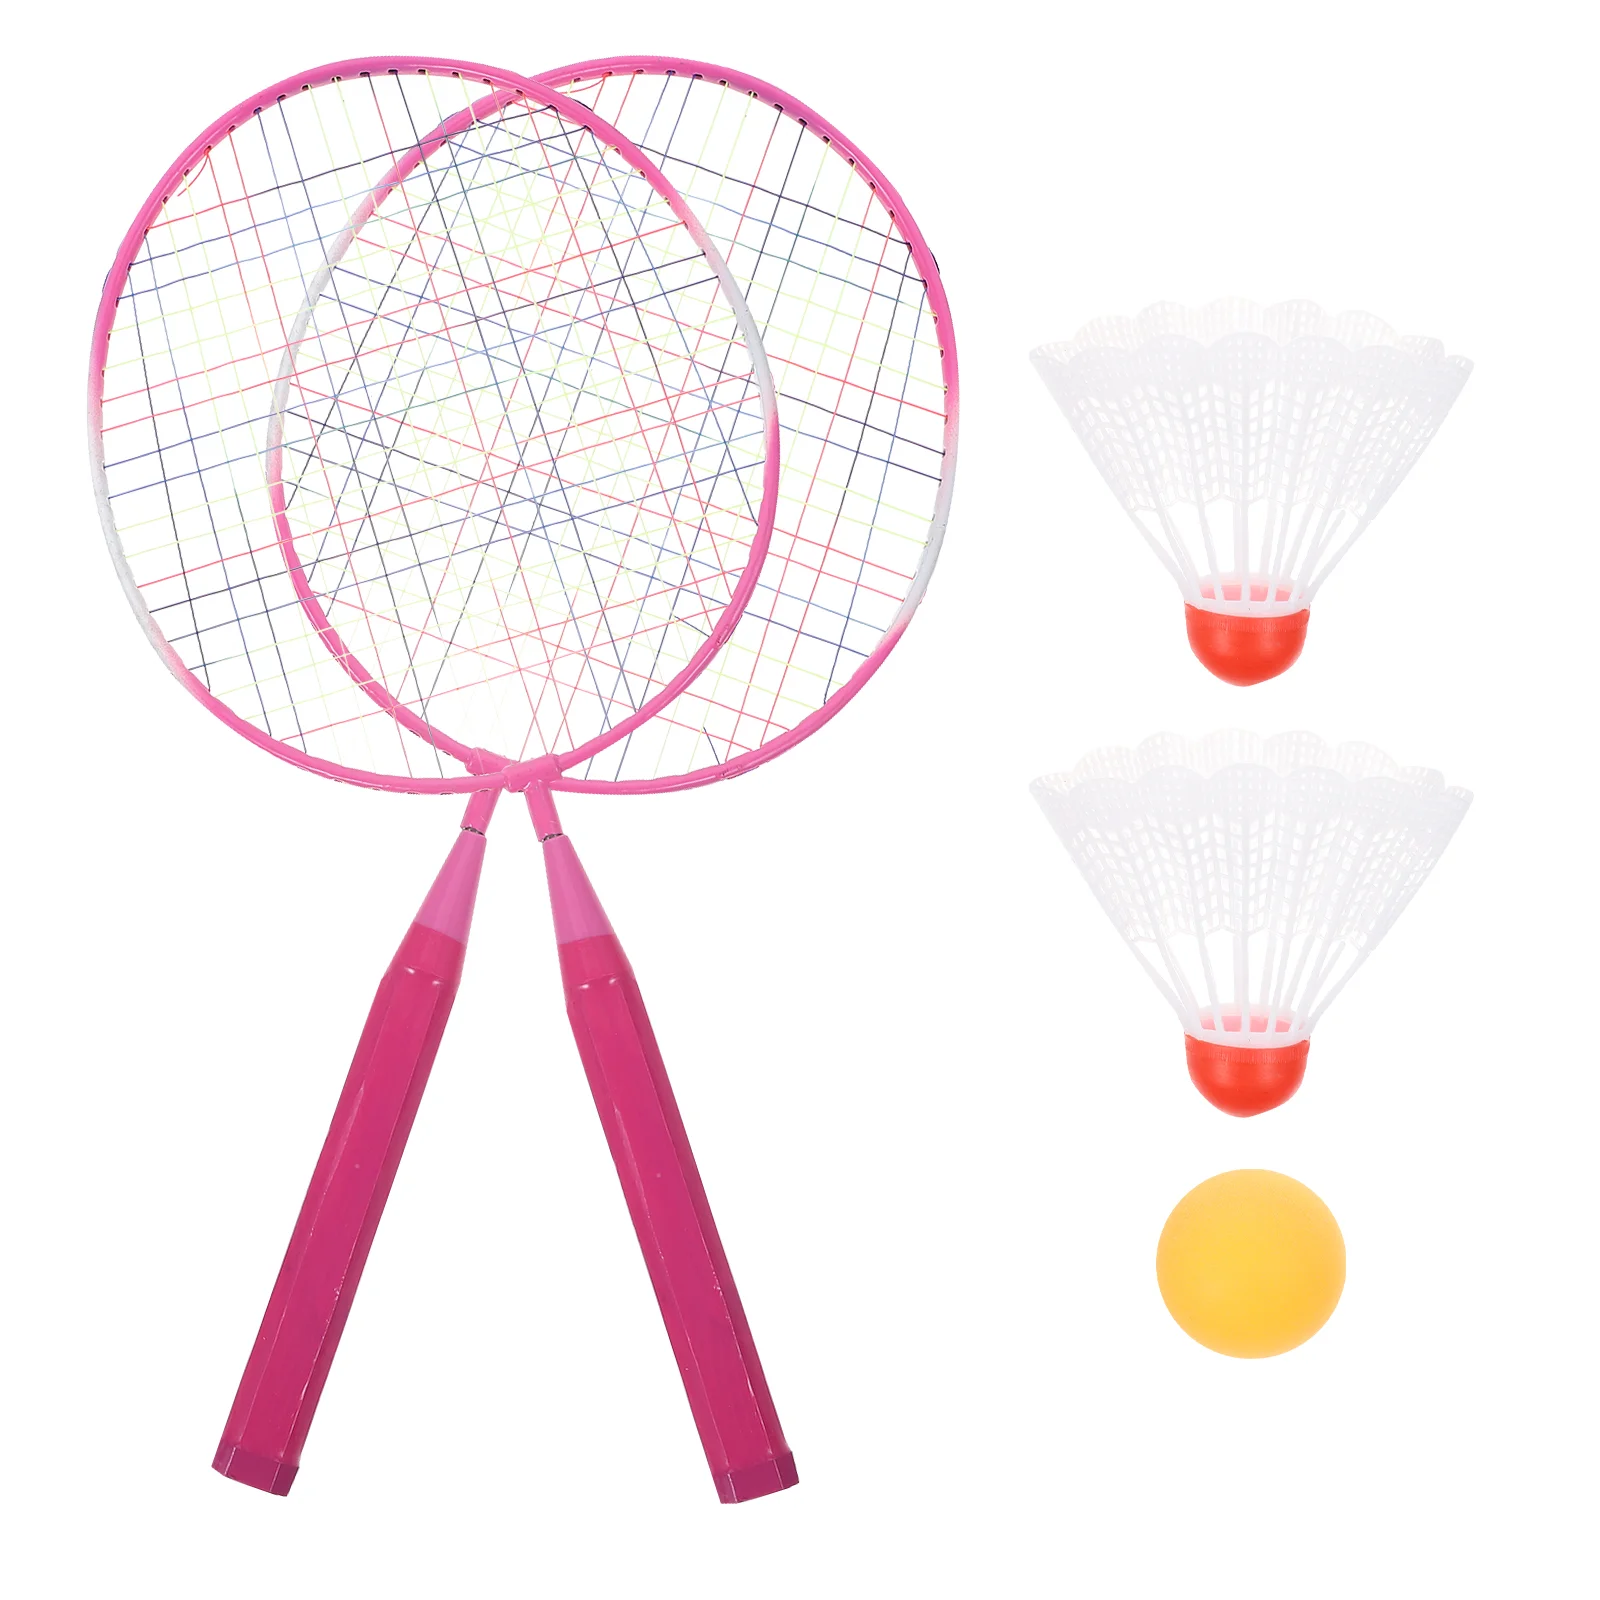 

Toy Kids Supplies Juguetes Para Niños Badminton Set Children Racket Balls Playing